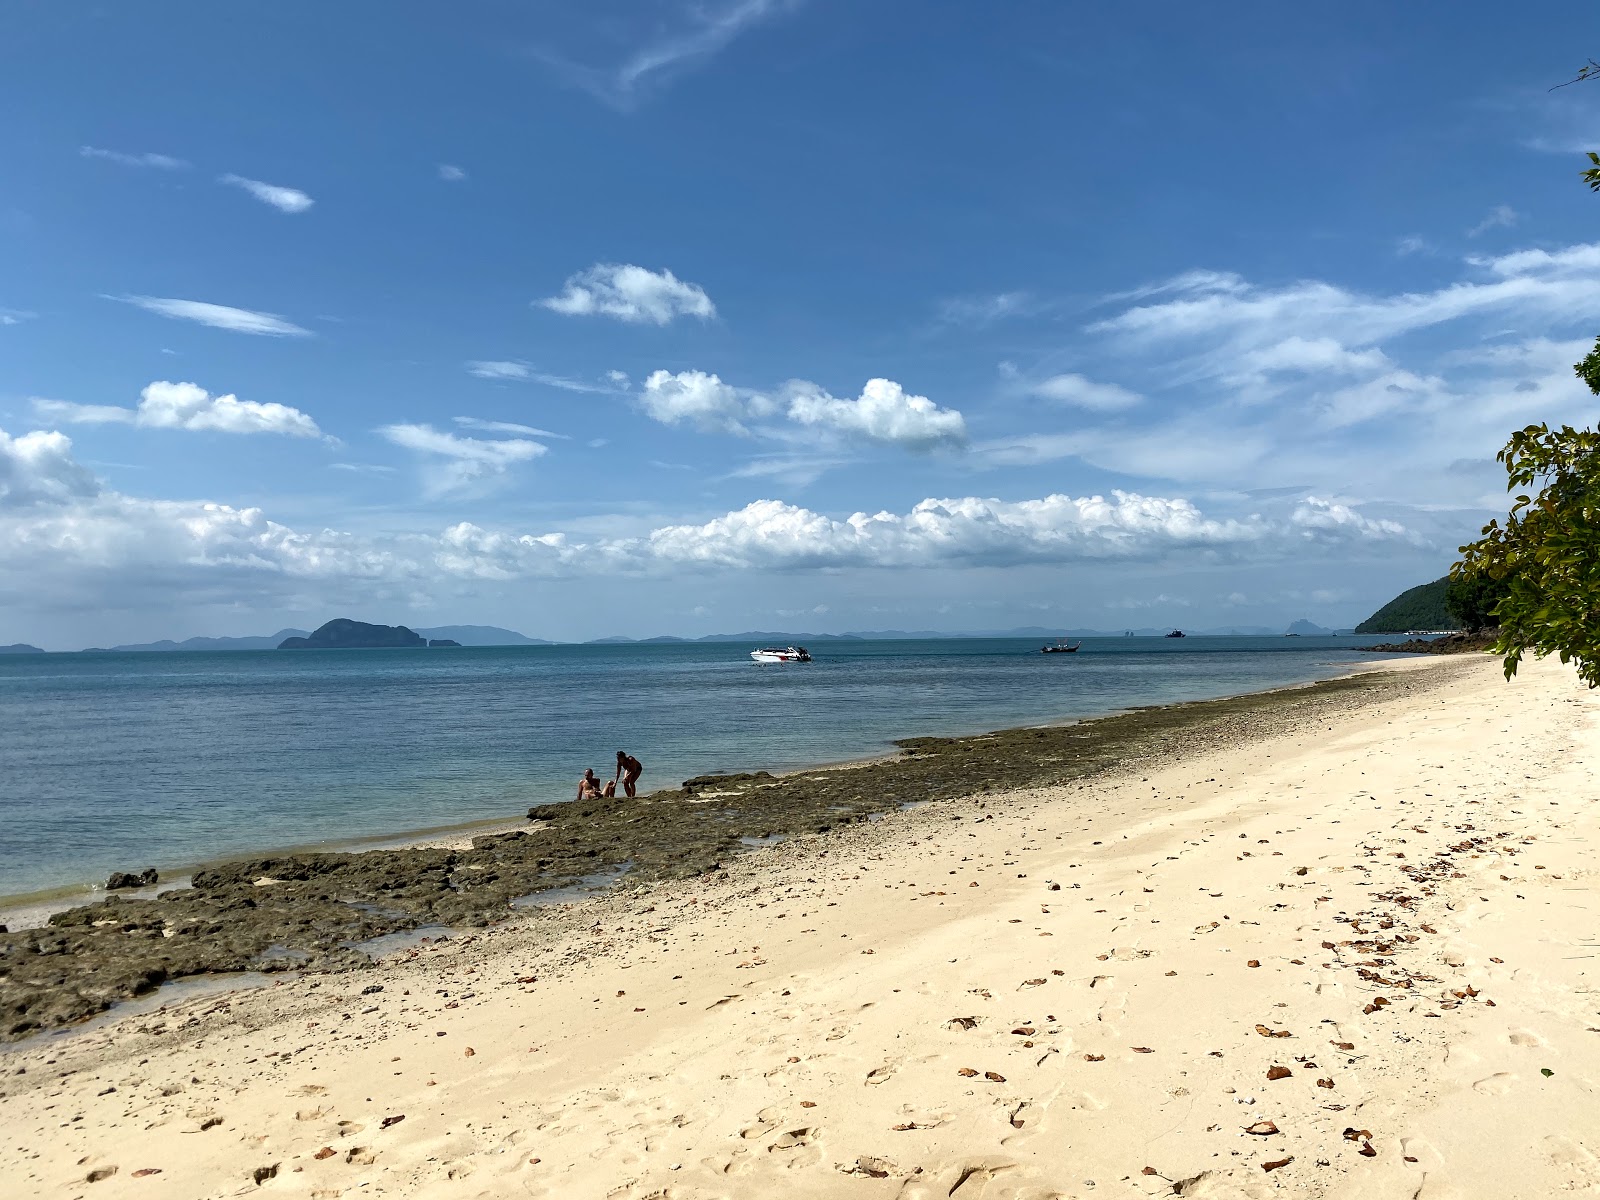 Foto af Ao Muong Beach - populært sted blandt afslapningskendere